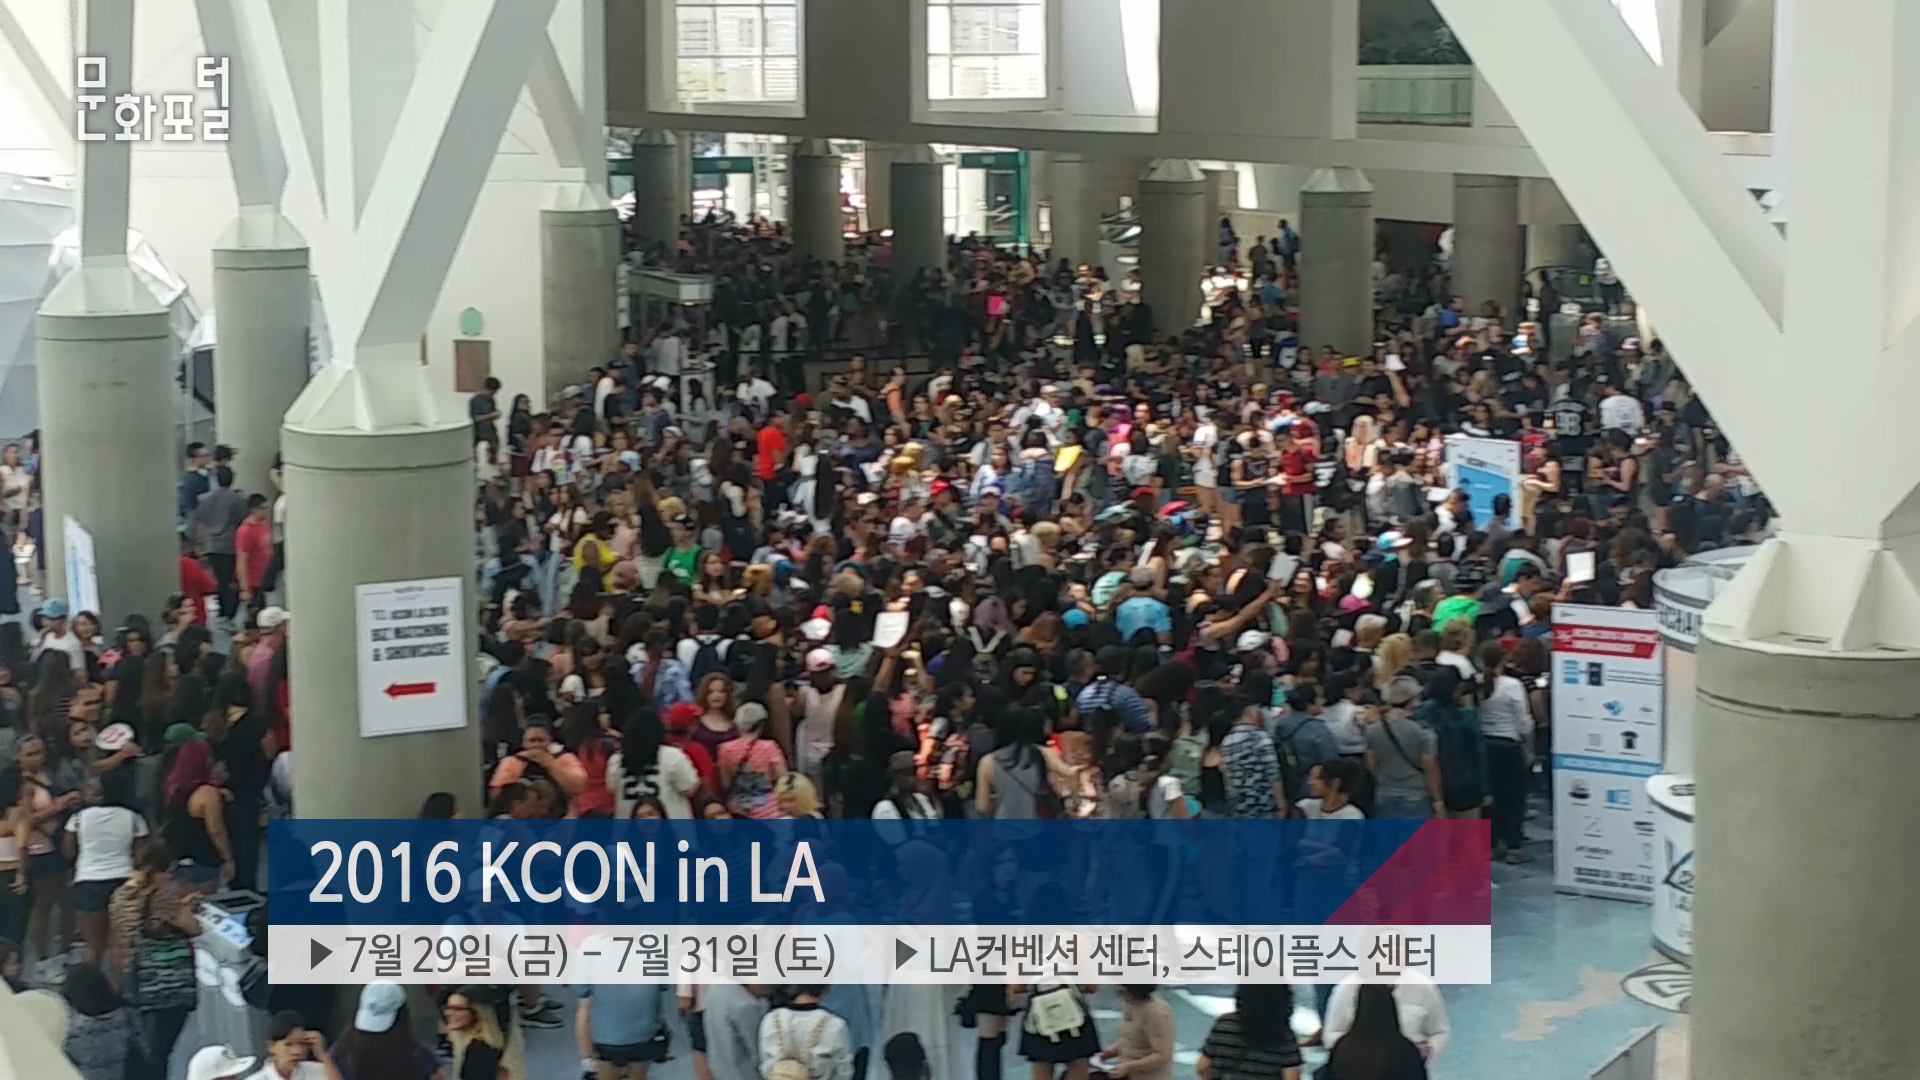 [주LA한국문화원] KCON in LA